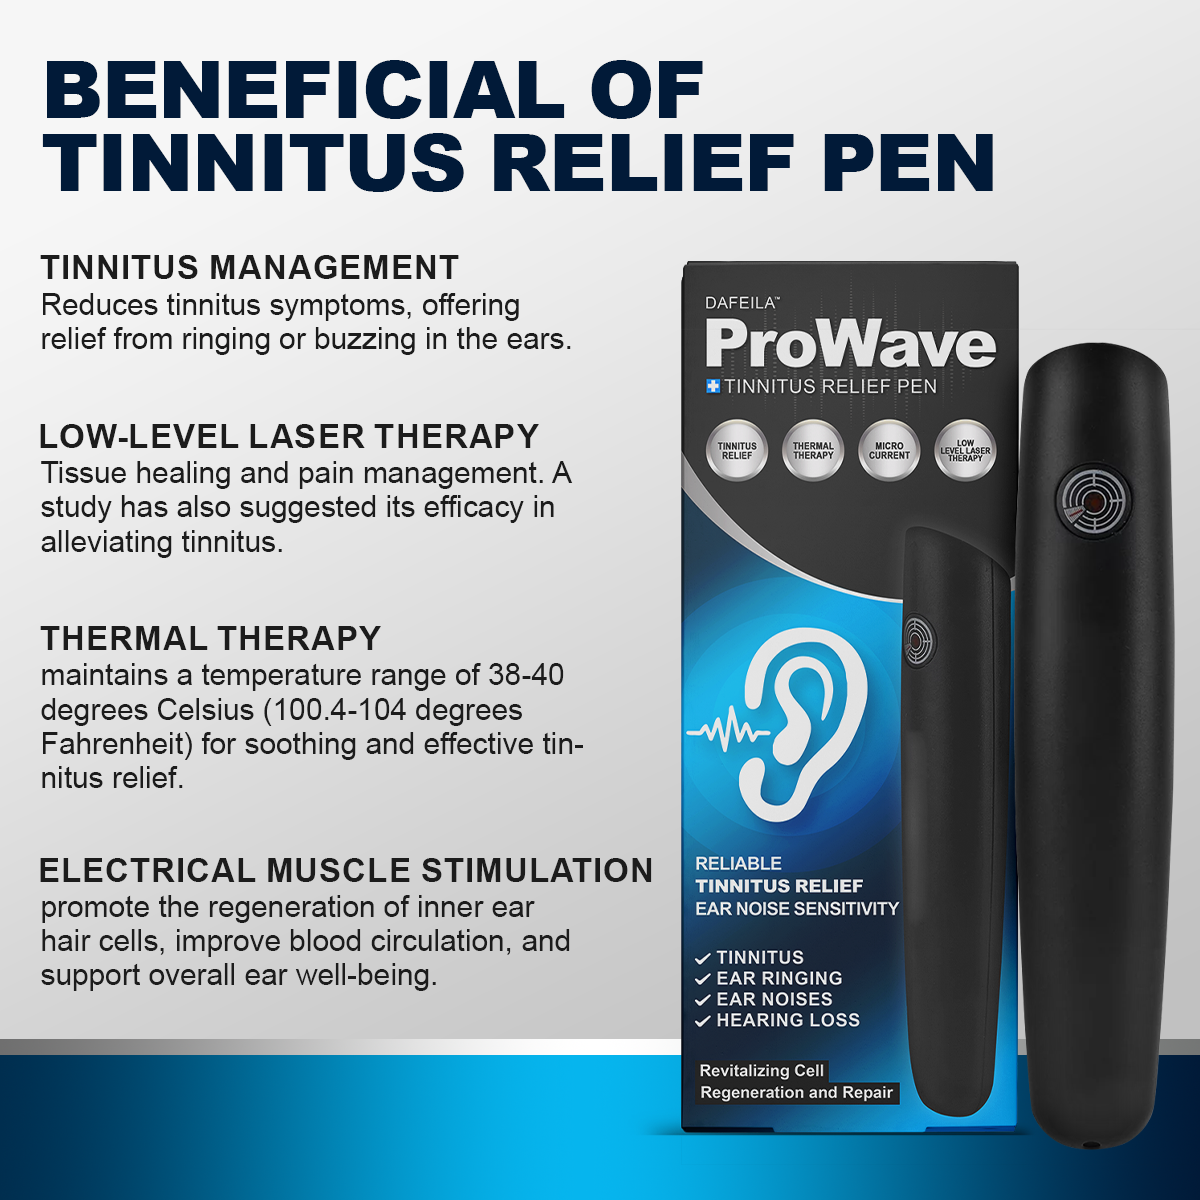 Dafeila™ ProWave Tinnitus Relief Pen